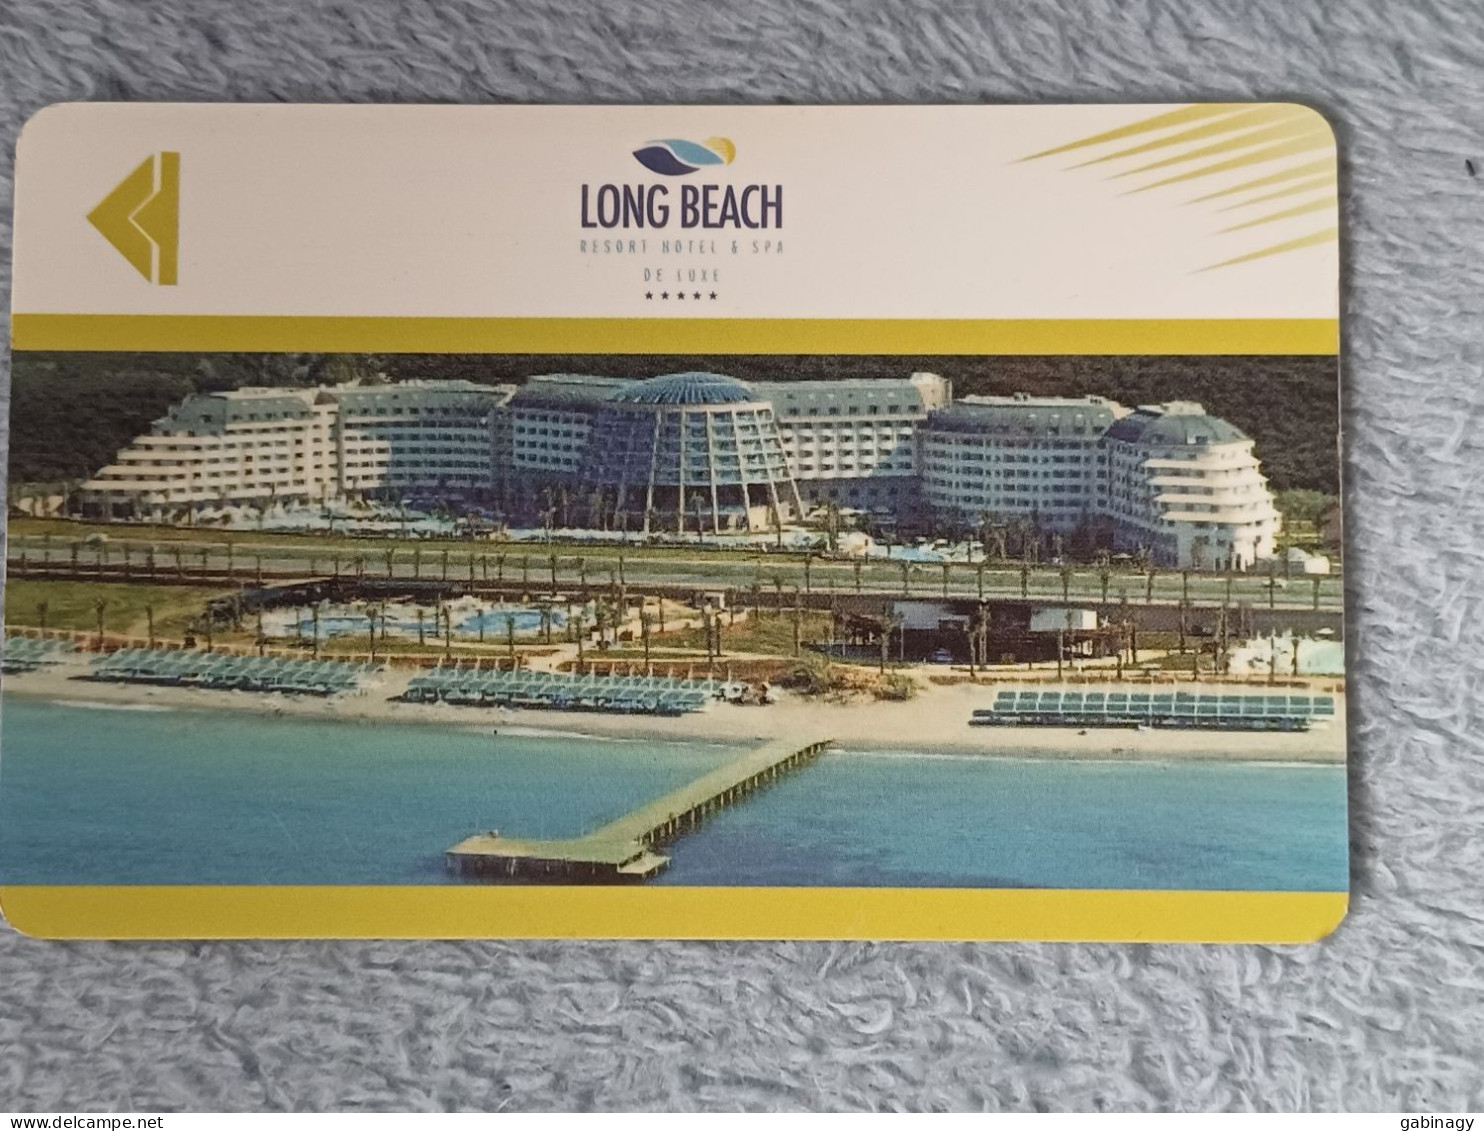 HOTEL KEYS - 2565 - TURKEY - LONG BEACH - Hotelkarten